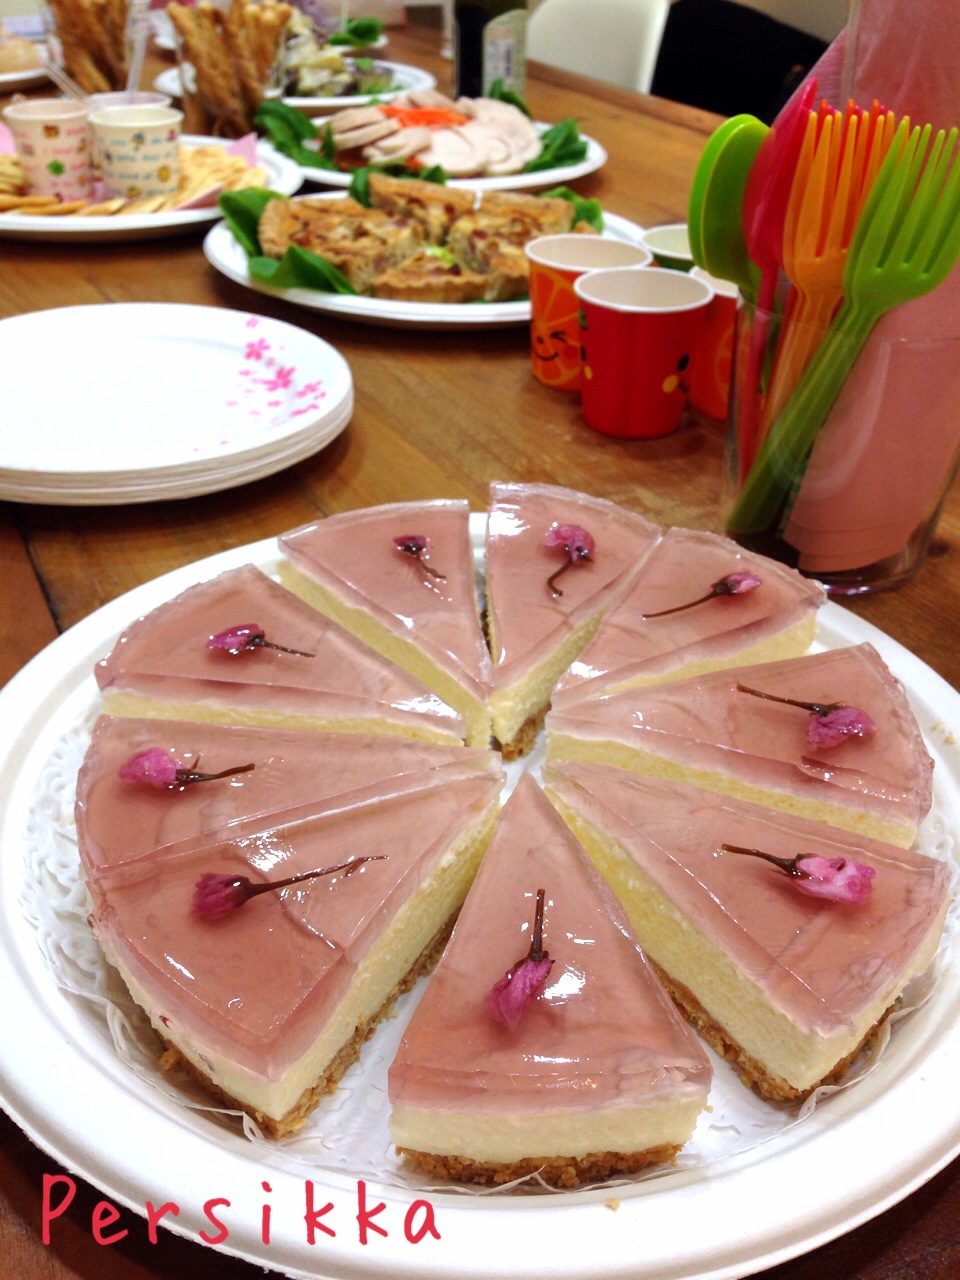 春に作りたい 桜のレアチーズケーキの作り方 桜の塩漬けがアクセントに 簡単sweets 簡単に気軽に手作りお菓子生活しませんか